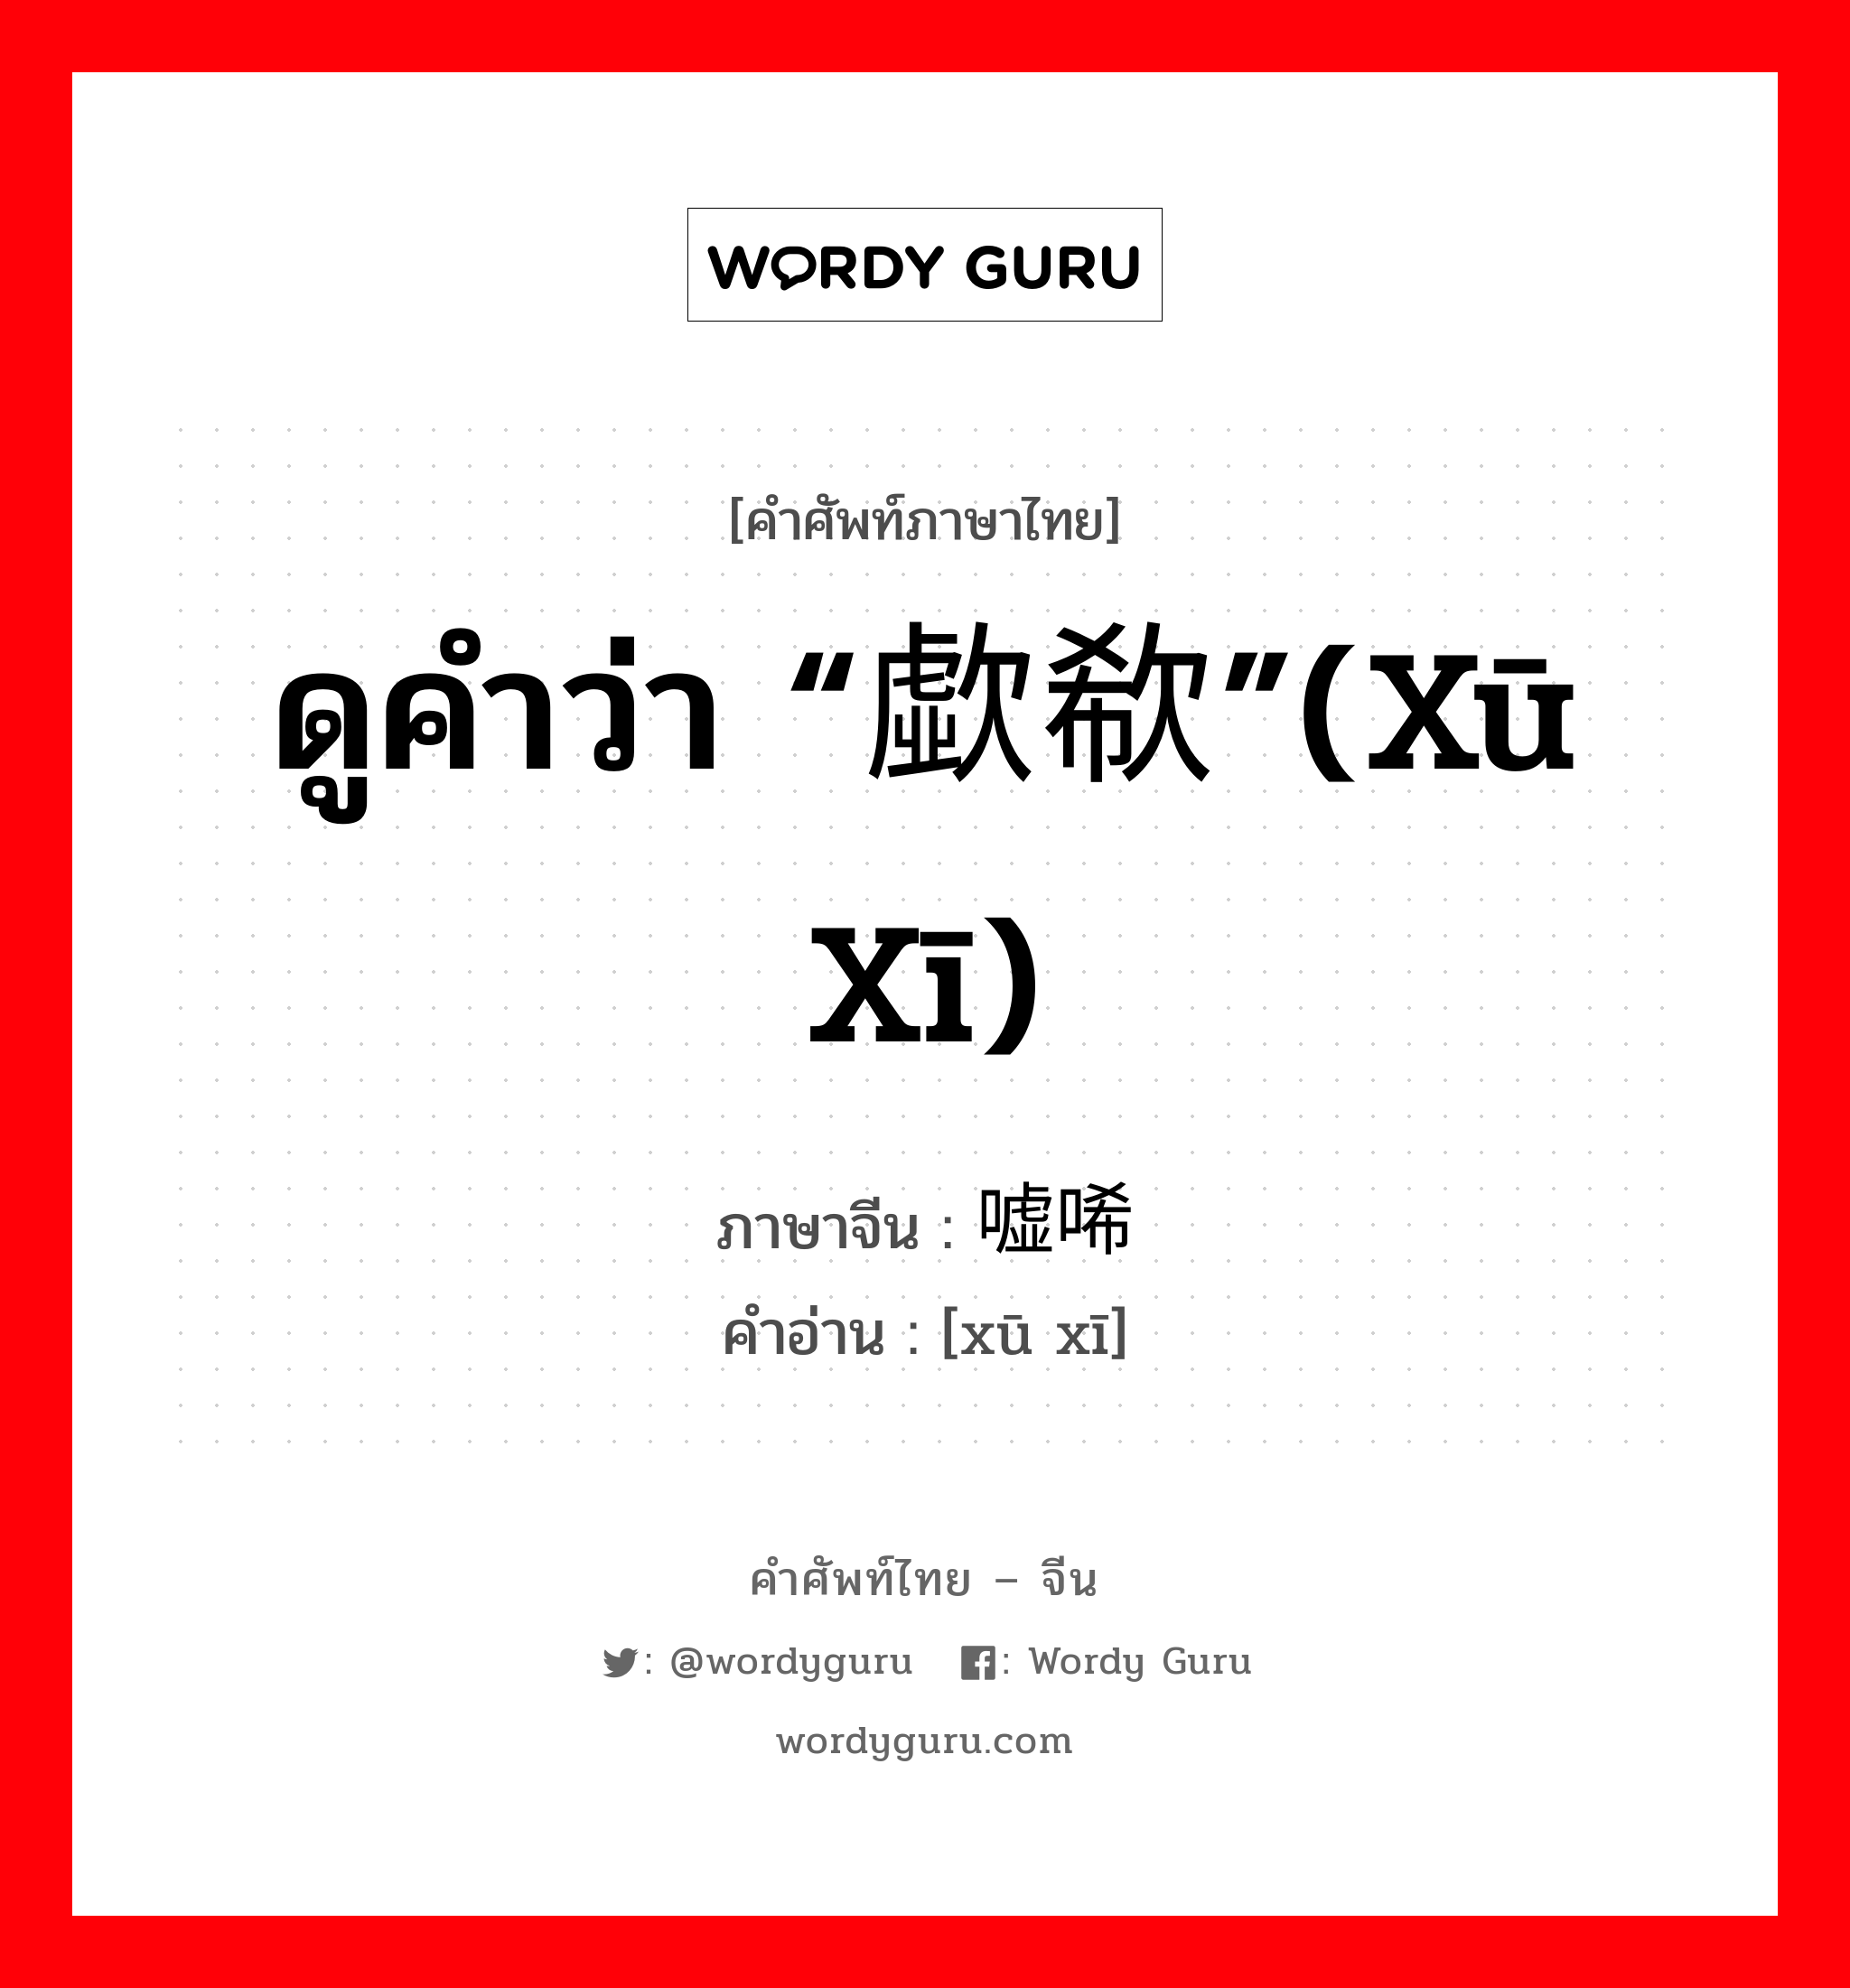 ดูคำว่า “歔欷”(xū xī) ภาษาจีนคืออะไร, คำศัพท์ภาษาไทย - จีน ดูคำว่า “歔欷”(xū xī) ภาษาจีน 嘘唏 คำอ่าน [xū xī]